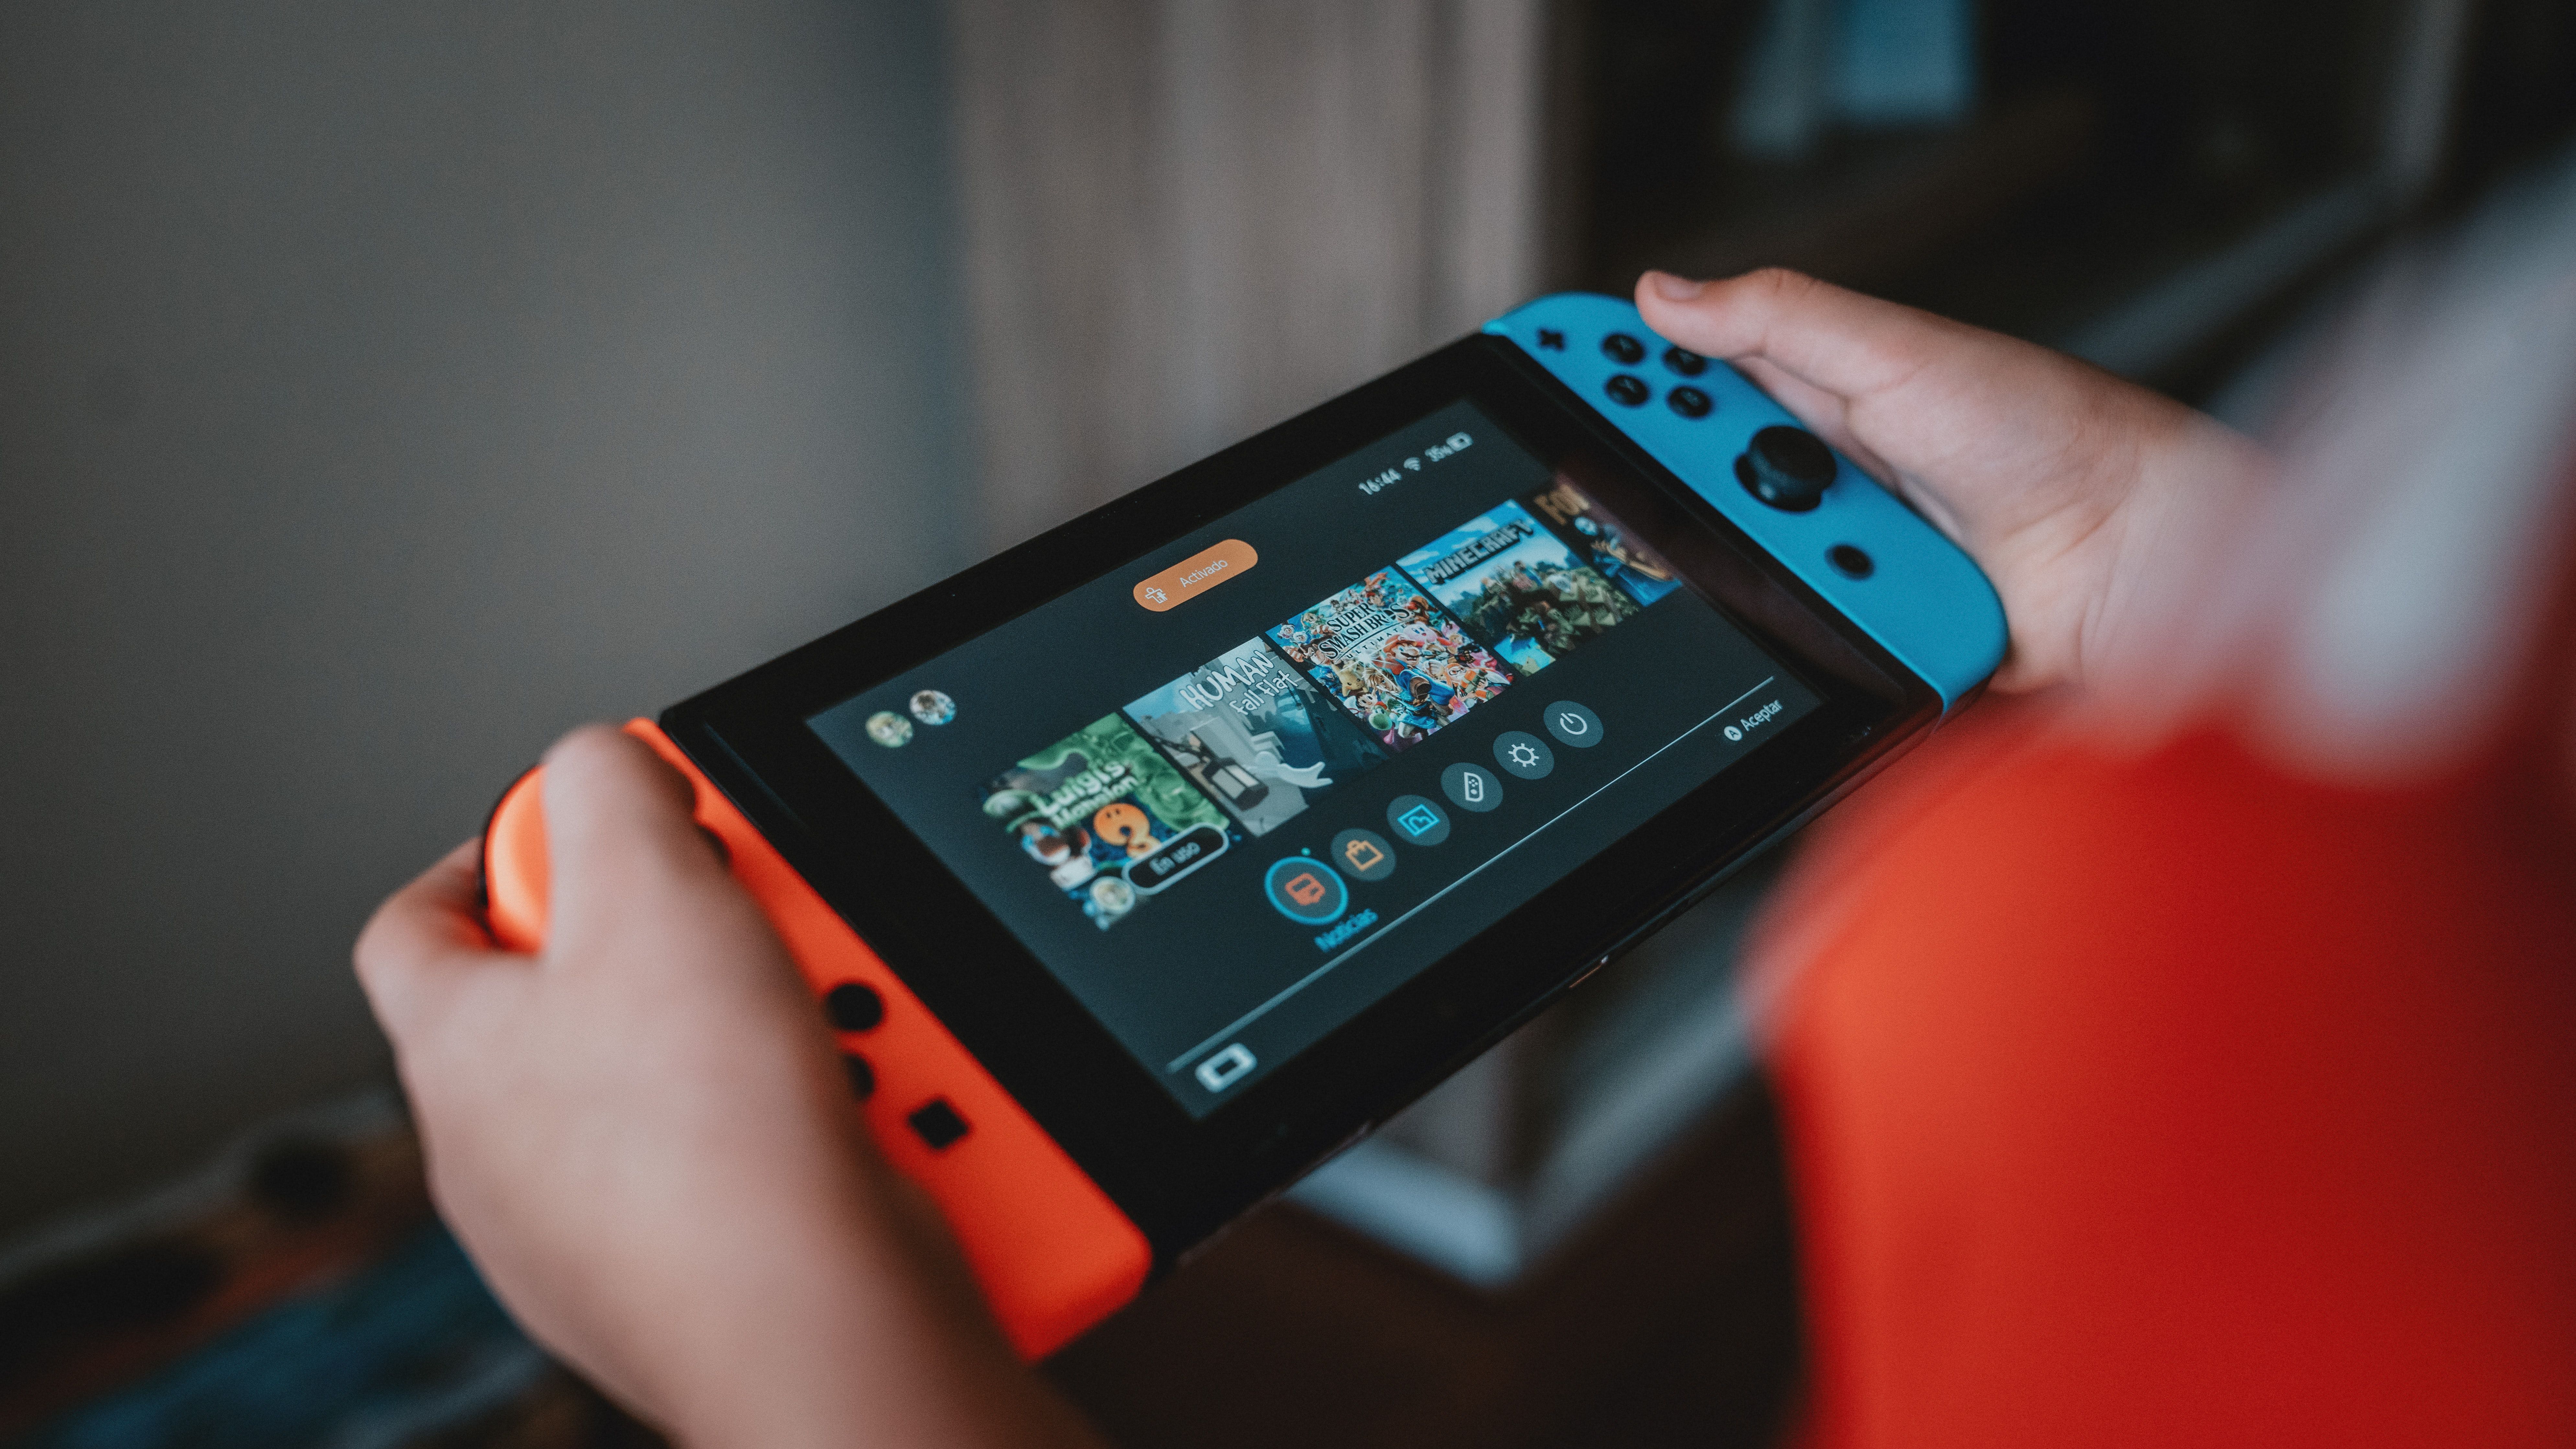 Nintendo Switch no Brasil: saiba quando e quanto custará o console no  lançamento - Canaltech